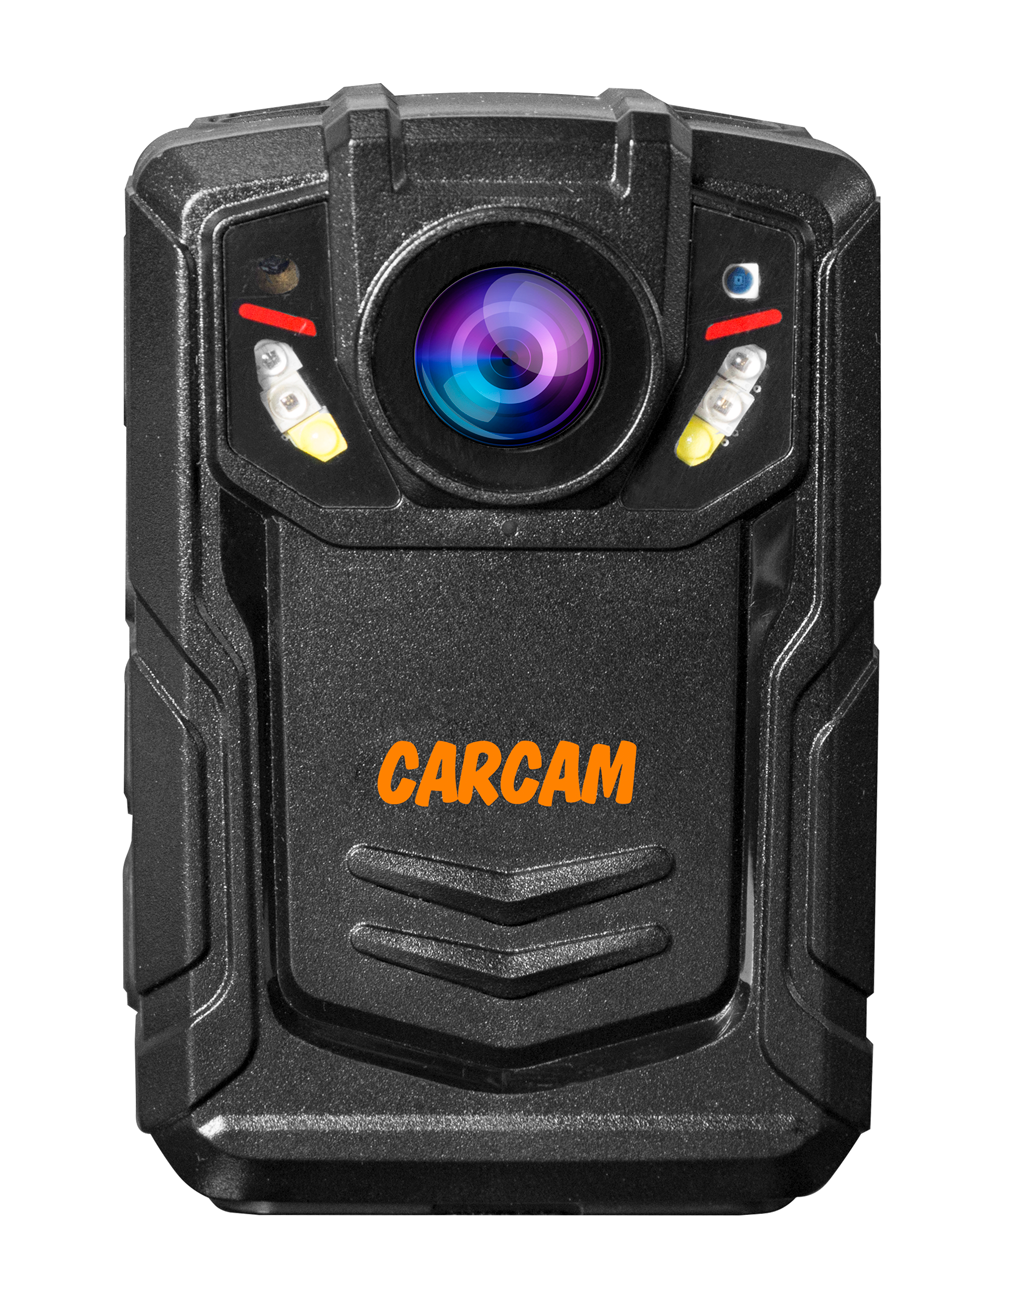 Персональный Quad HD видеорегистратор  CARCAM COMBAT 2S/4G 128GB персональный full hd видеорегистратор с функцией стабилизации изображения carcam combat 2s pro